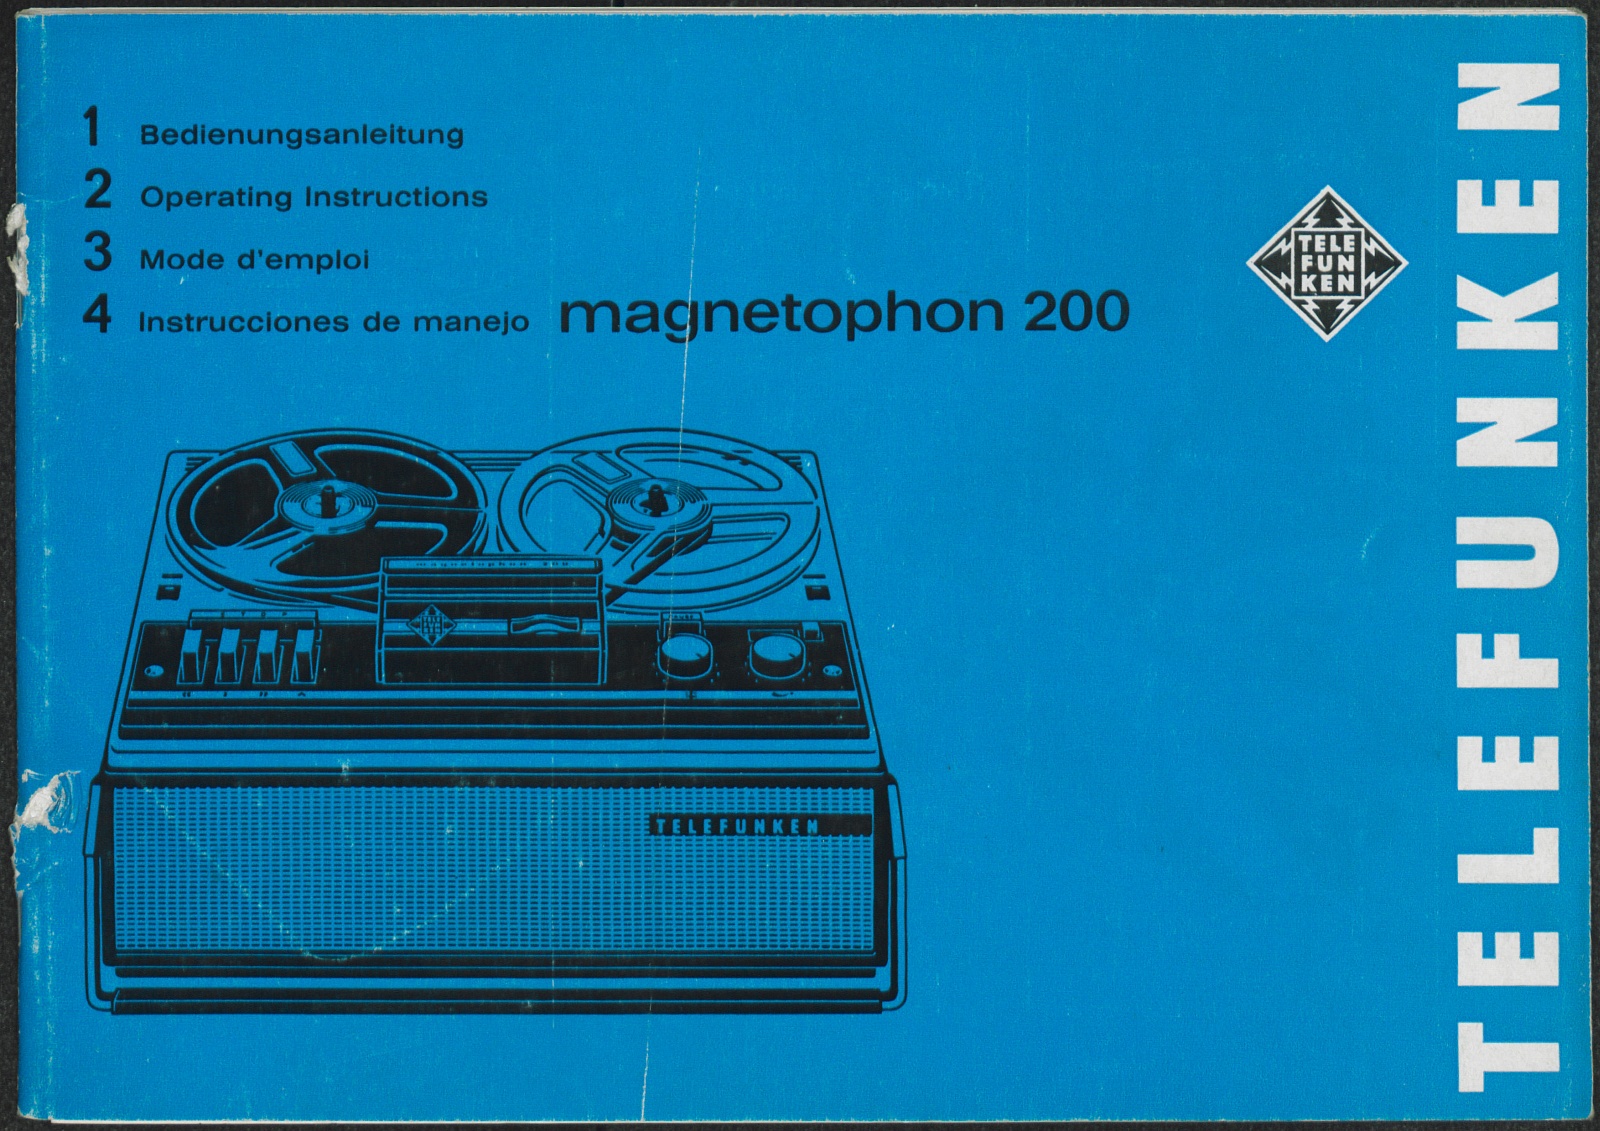 Bedienungsanleitung: Bedienungsanleitung Telefunken Magnetophon 200 (Stiftung Deutsches Technikmuseum Berlin CC0)